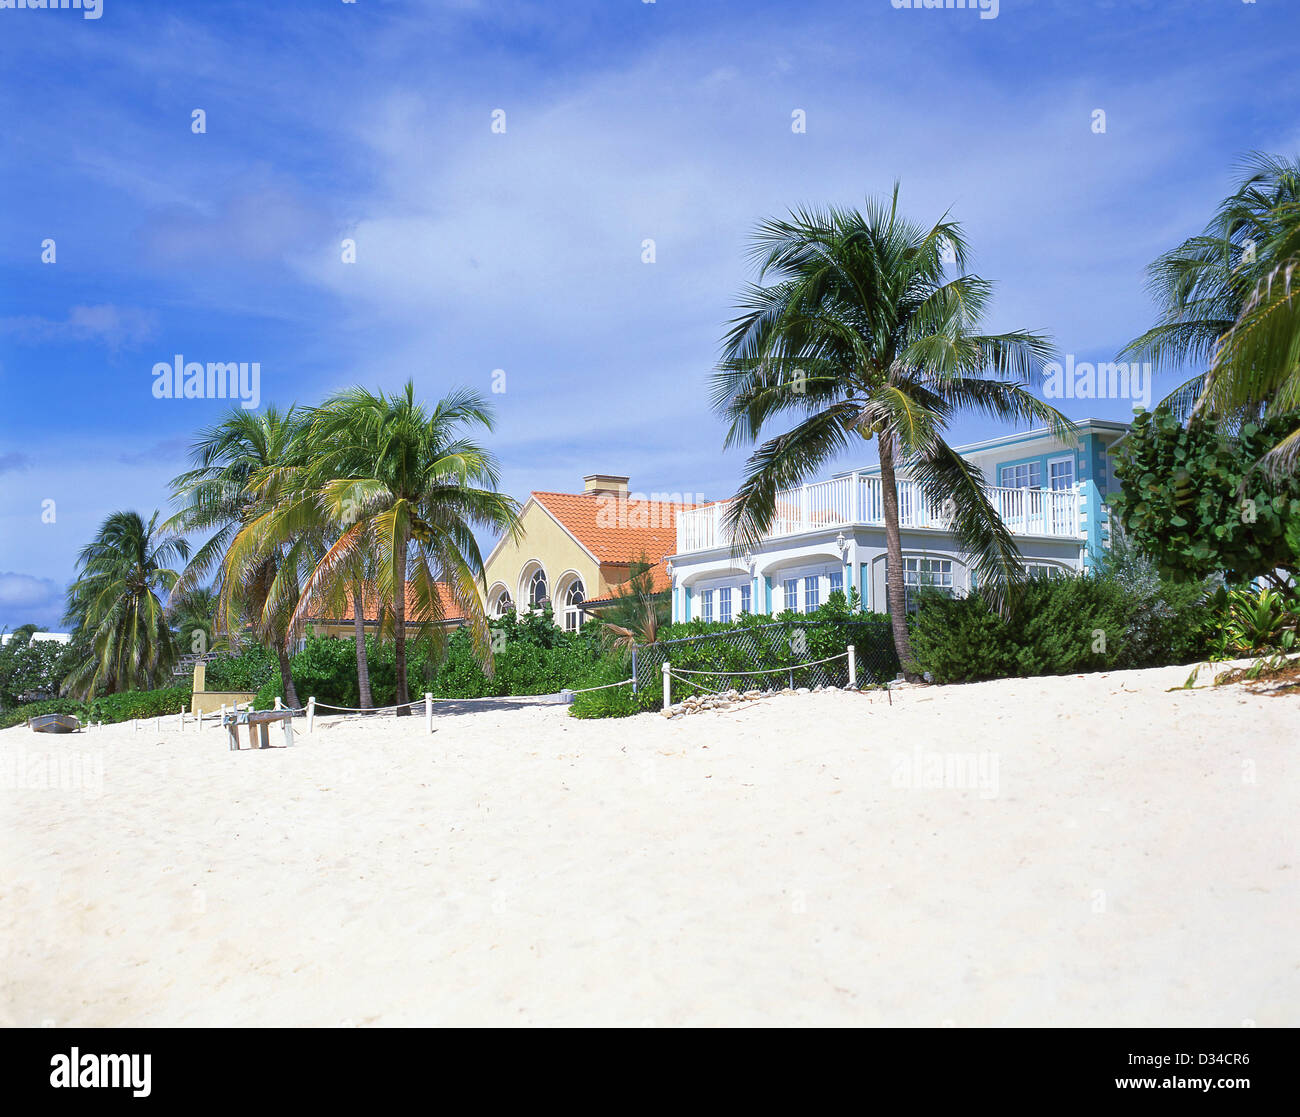 Maisons de Plage de luxe, Seven Mile Beach, George Town, Grand Cayman, îles Caïmans, Antilles, Caraïbes Banque D'Images